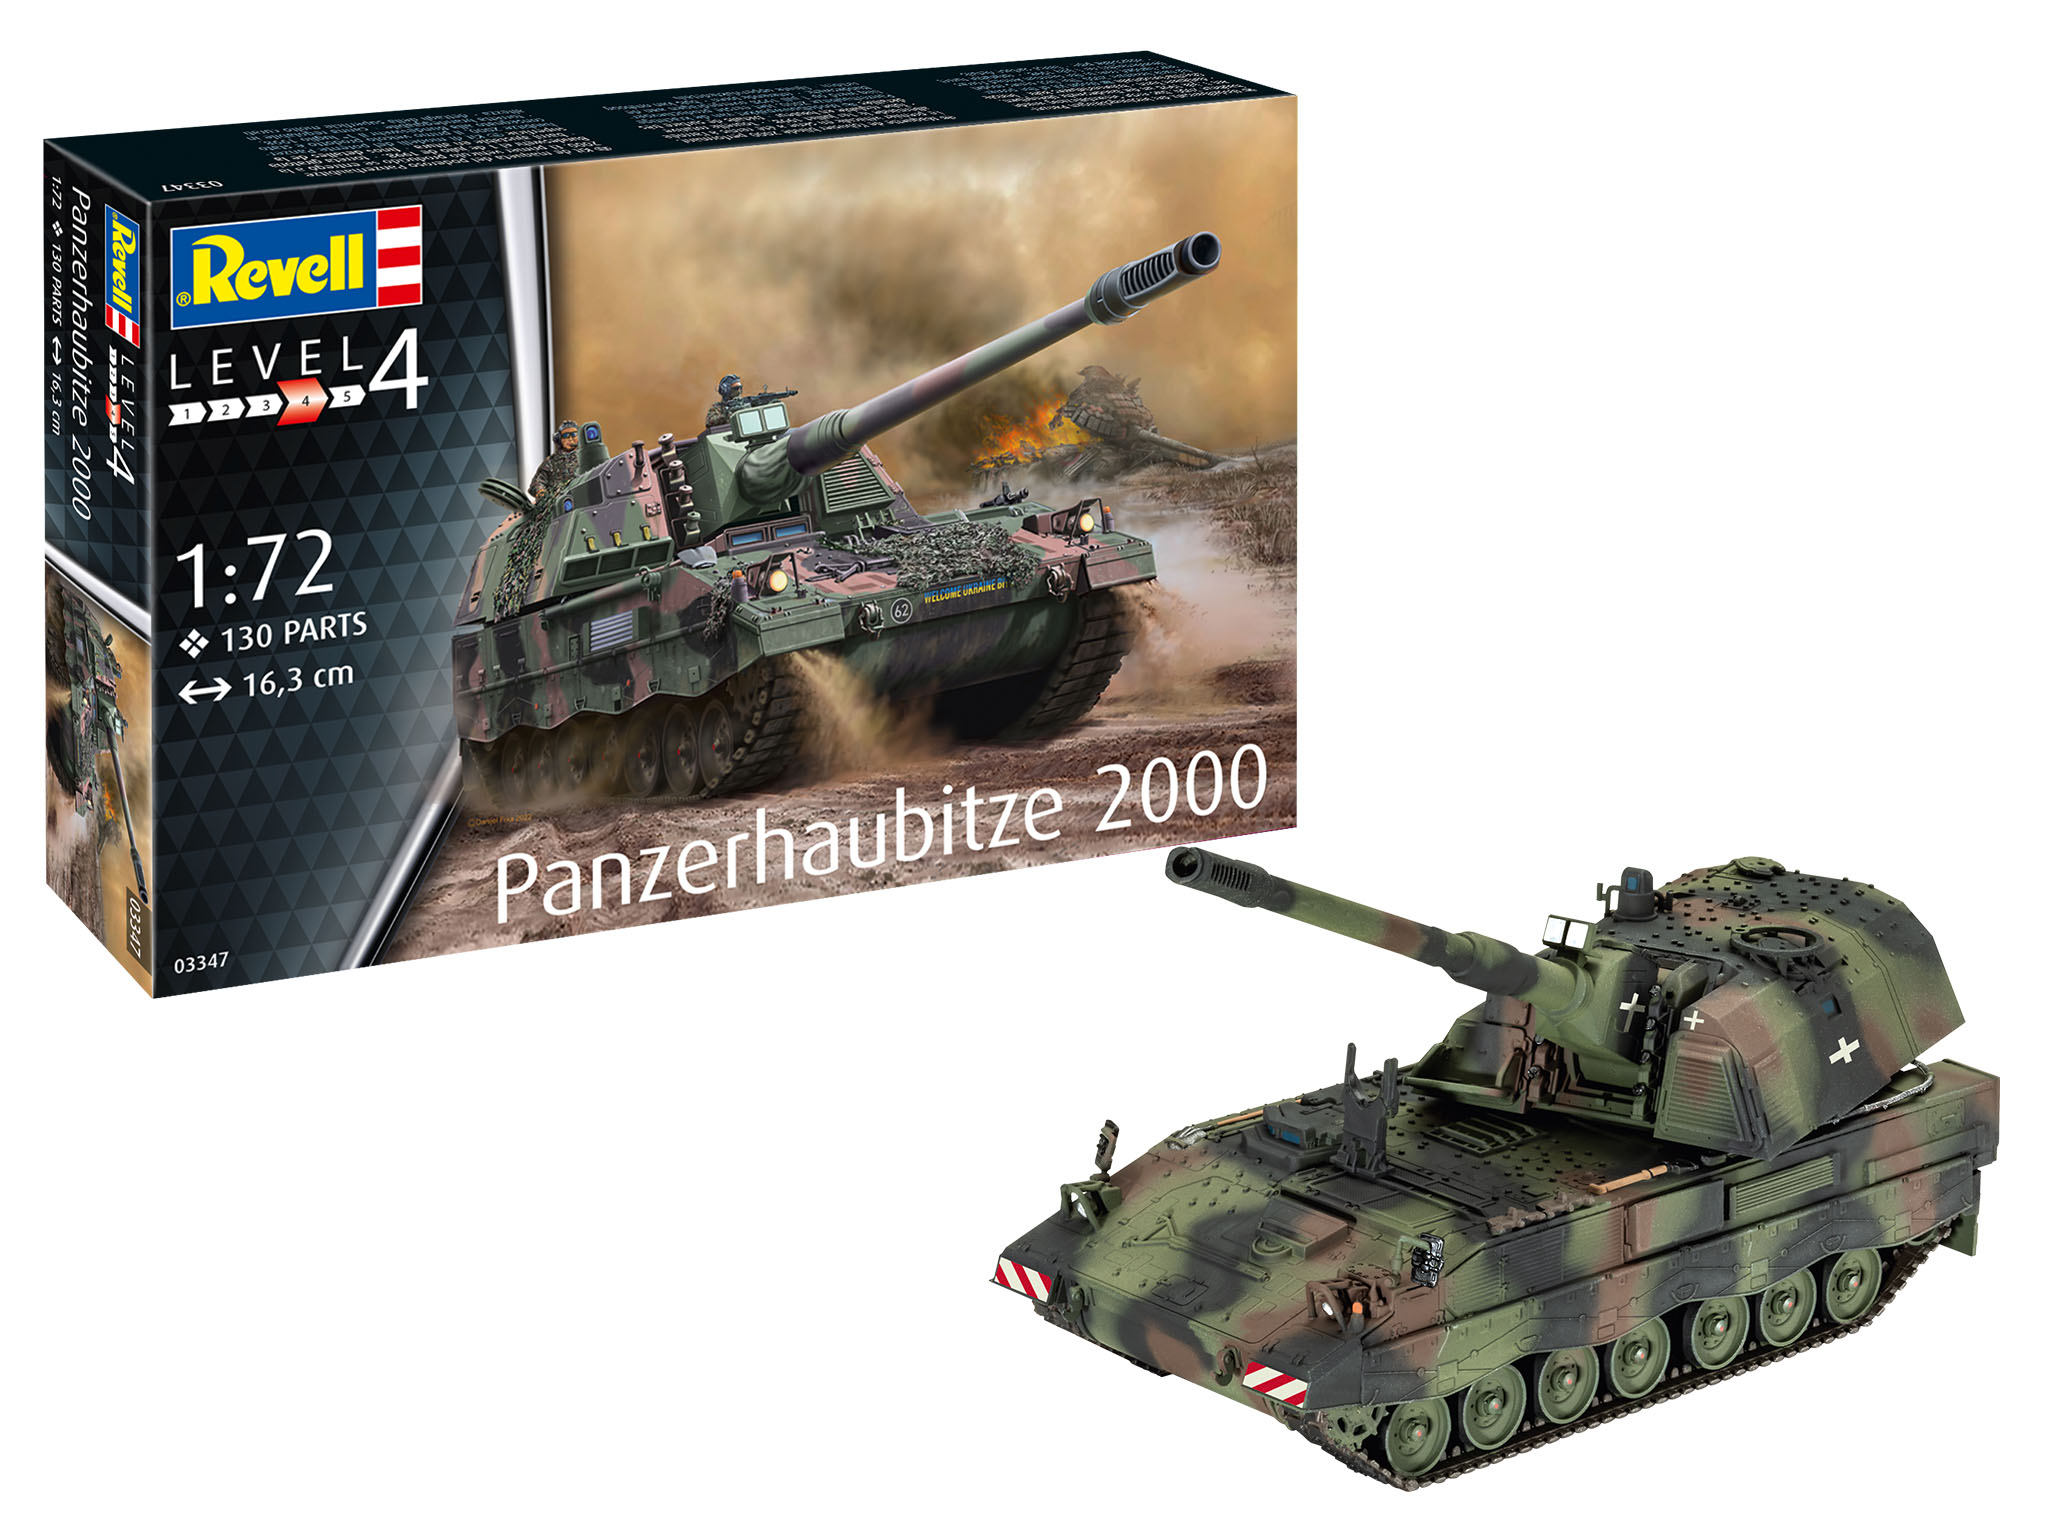 1:72 Panzerhaubitze 2000 